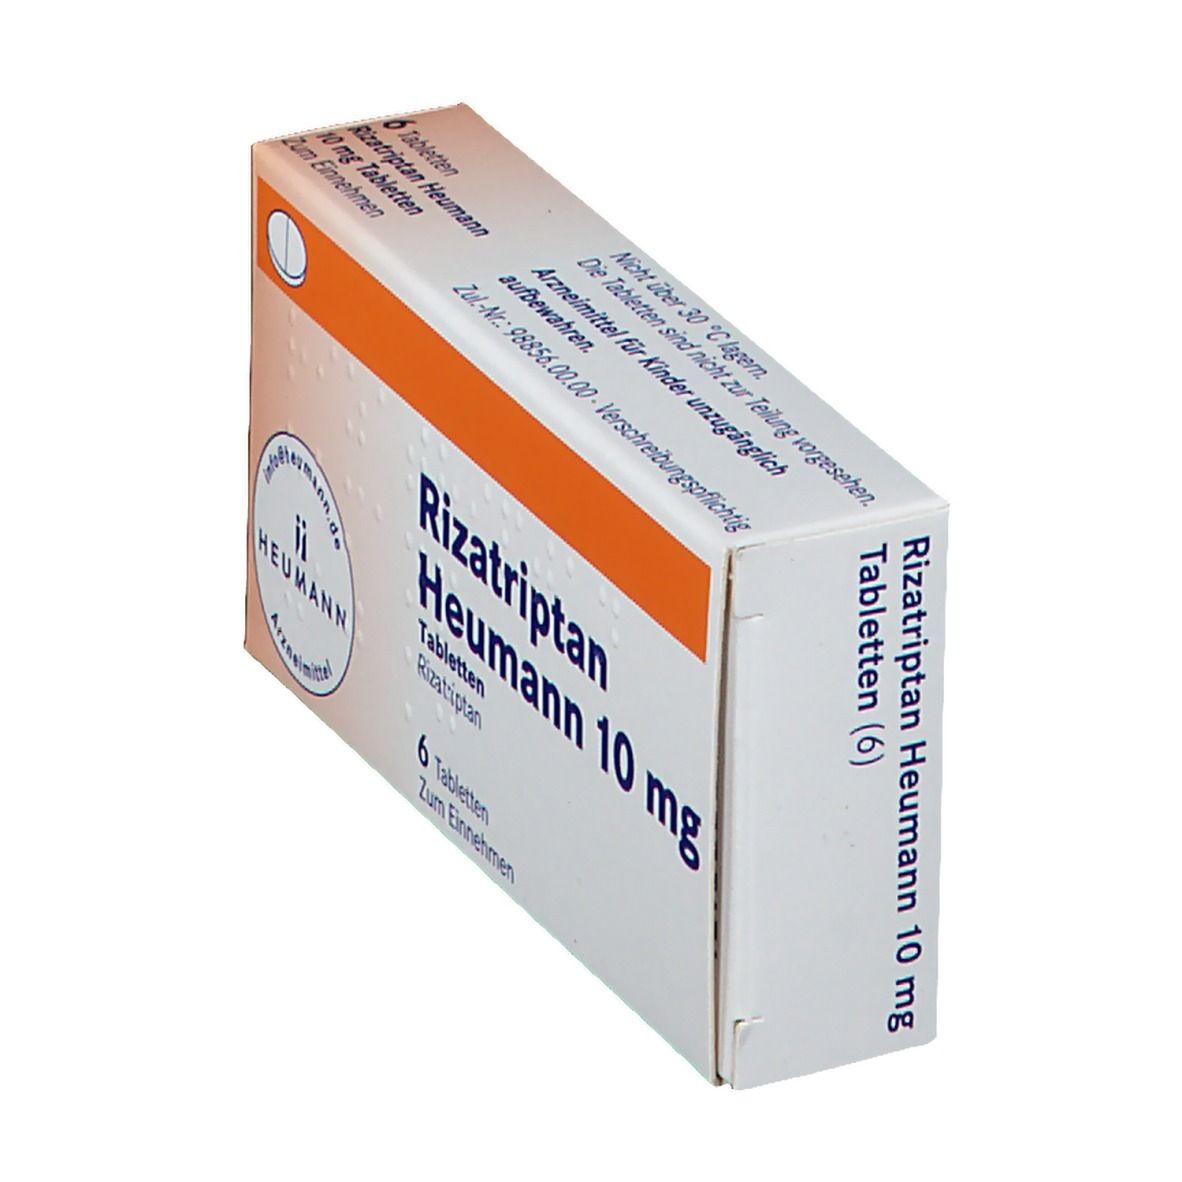 Rizatriptan Heumann 10 mg